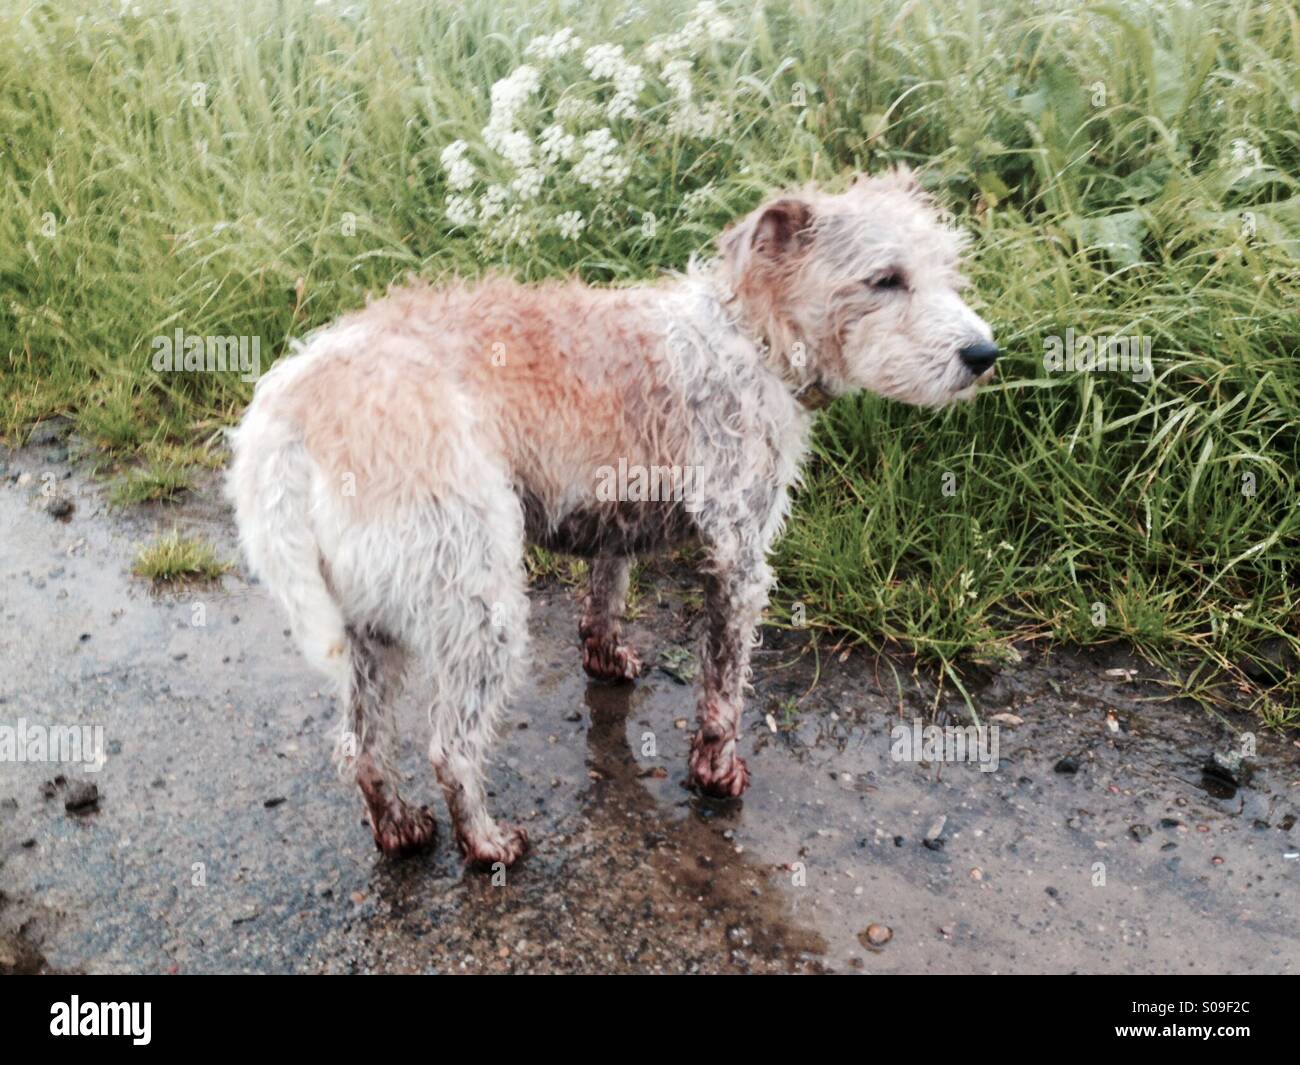 Wet dog Stock Photo